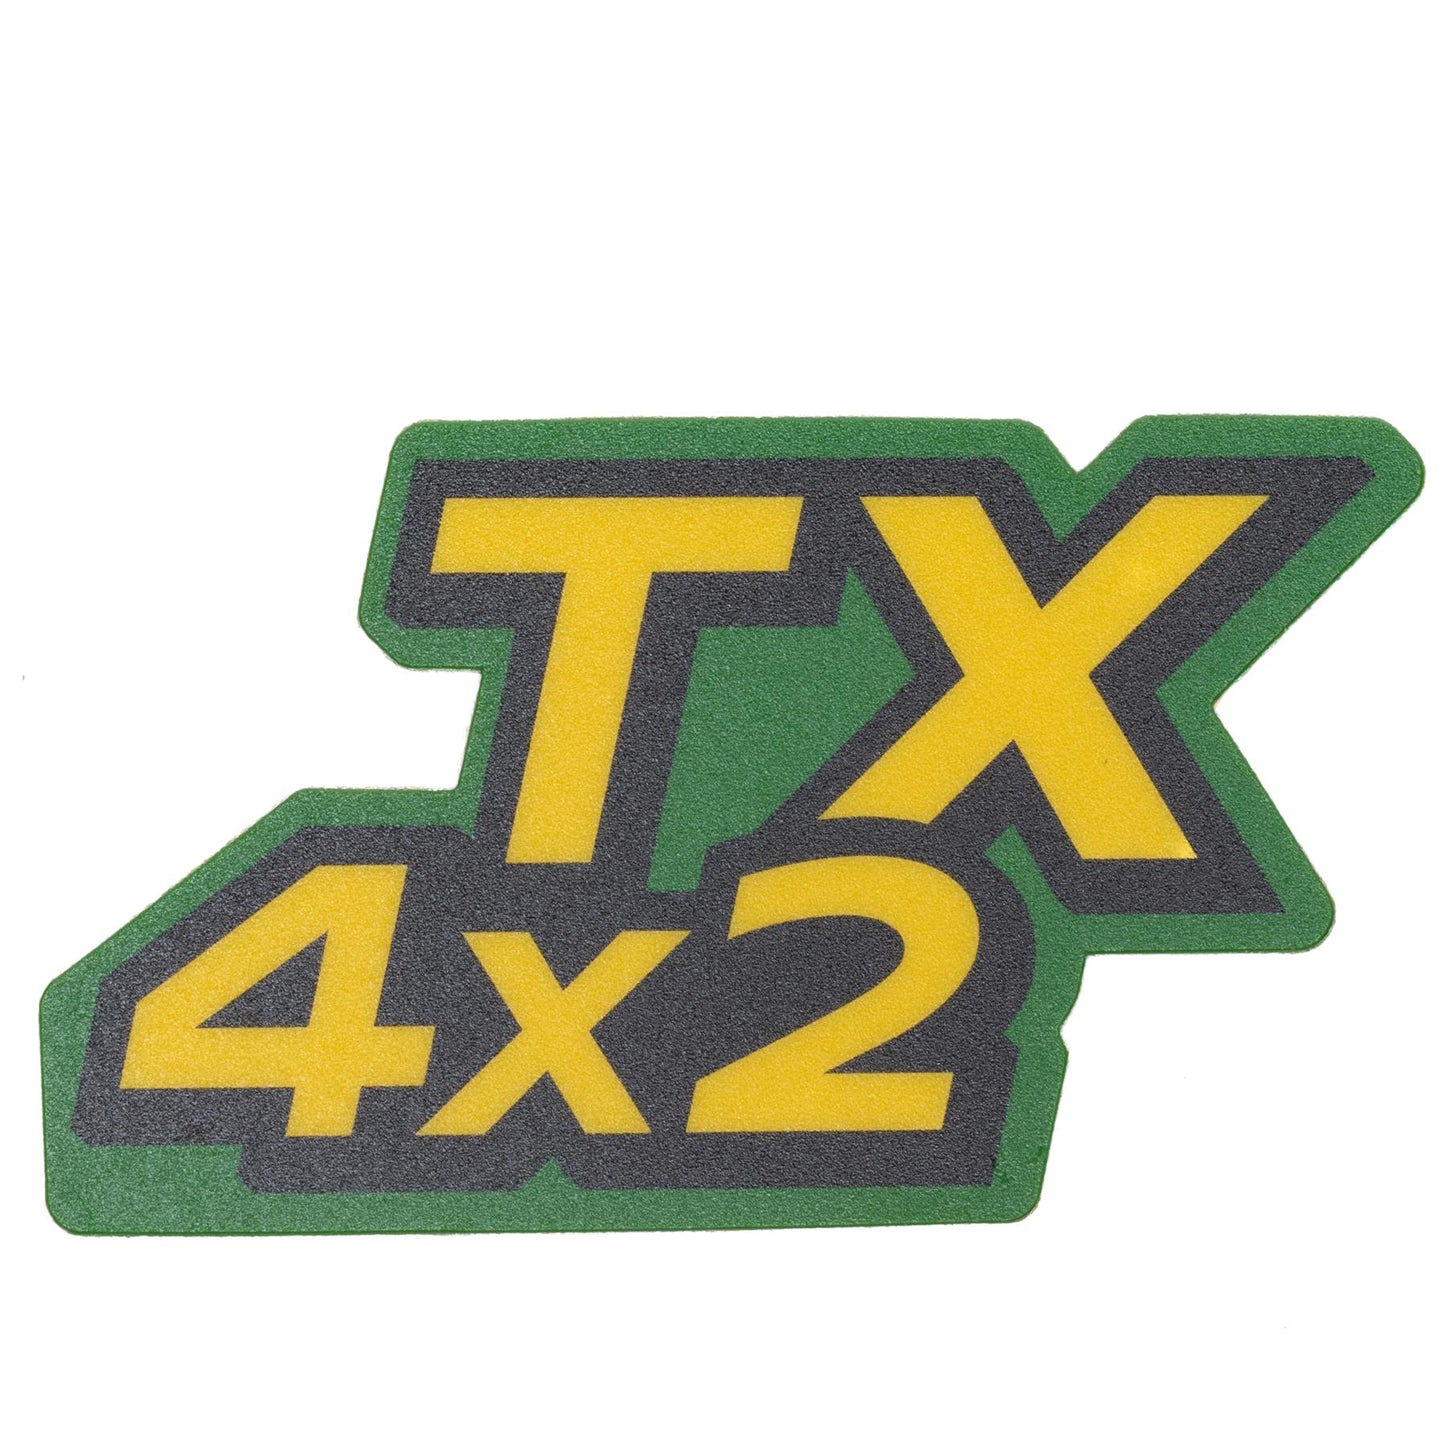 John Deere Decal - TX 4X2 - UC28406